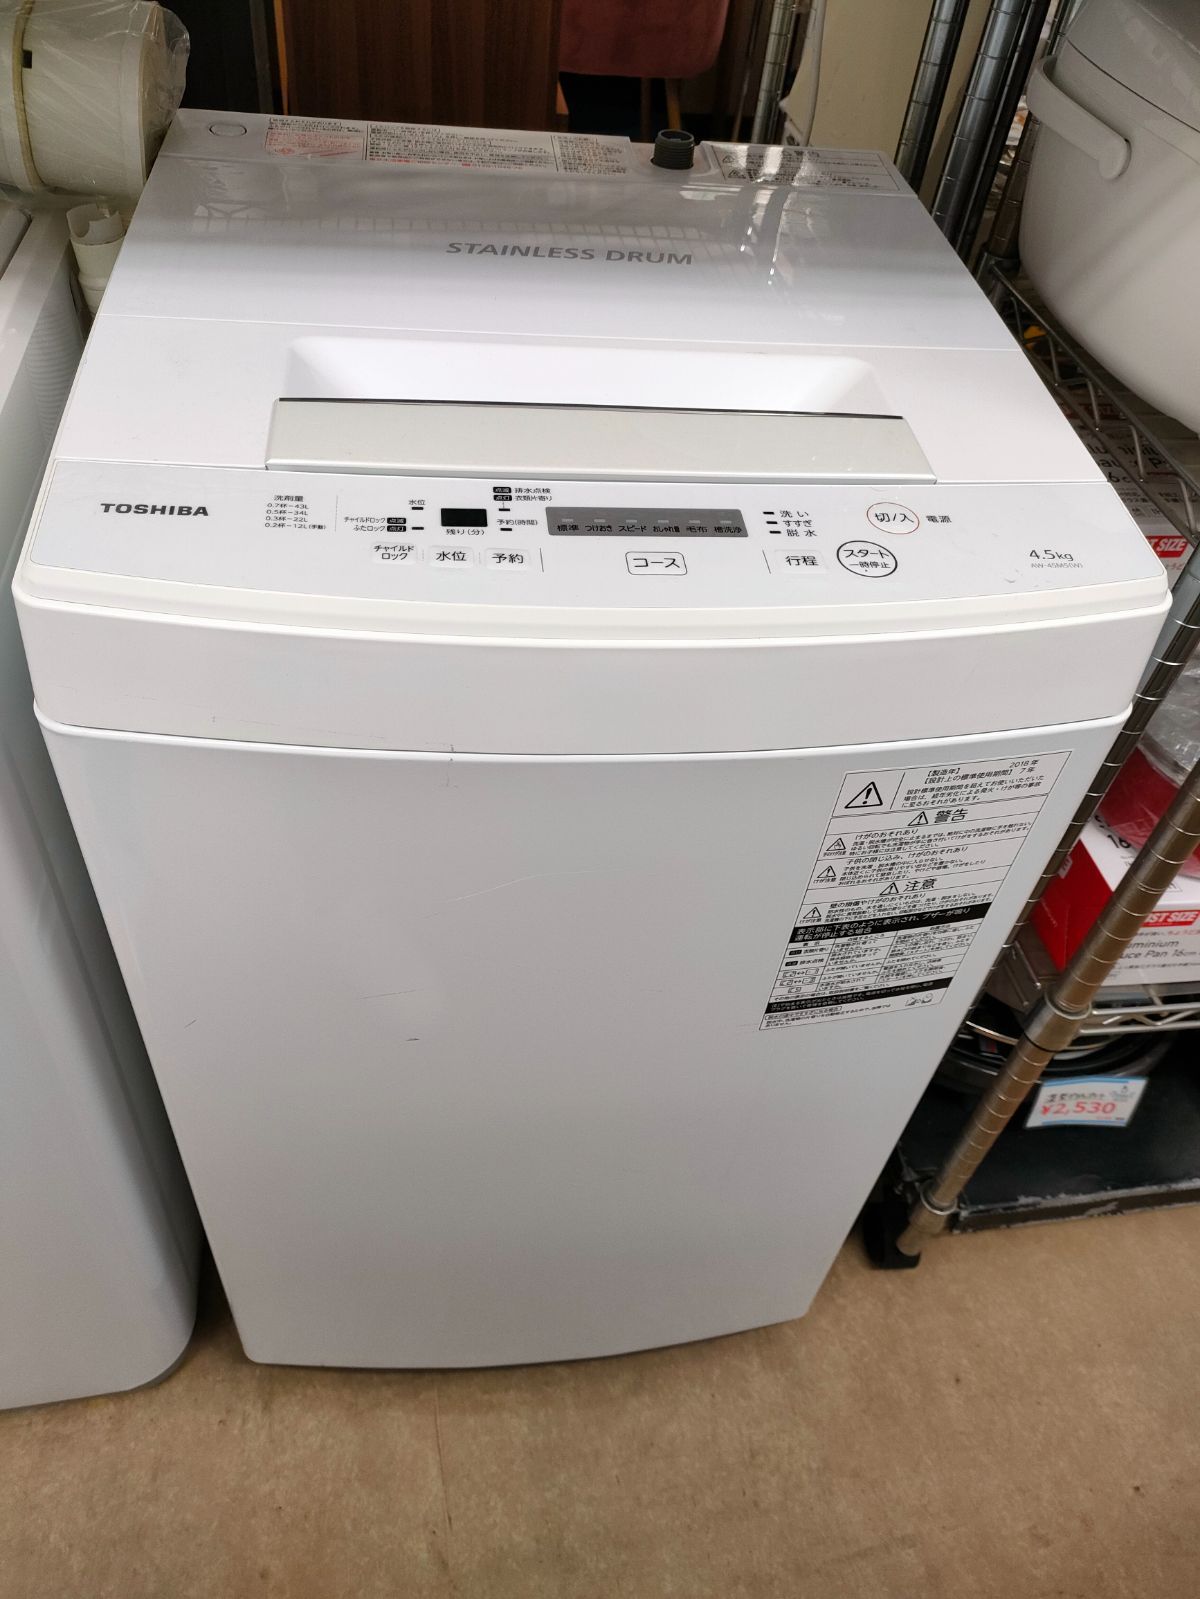 ◇ TOSHIBA 洗濯機 4.5kg AW-45M5(W)